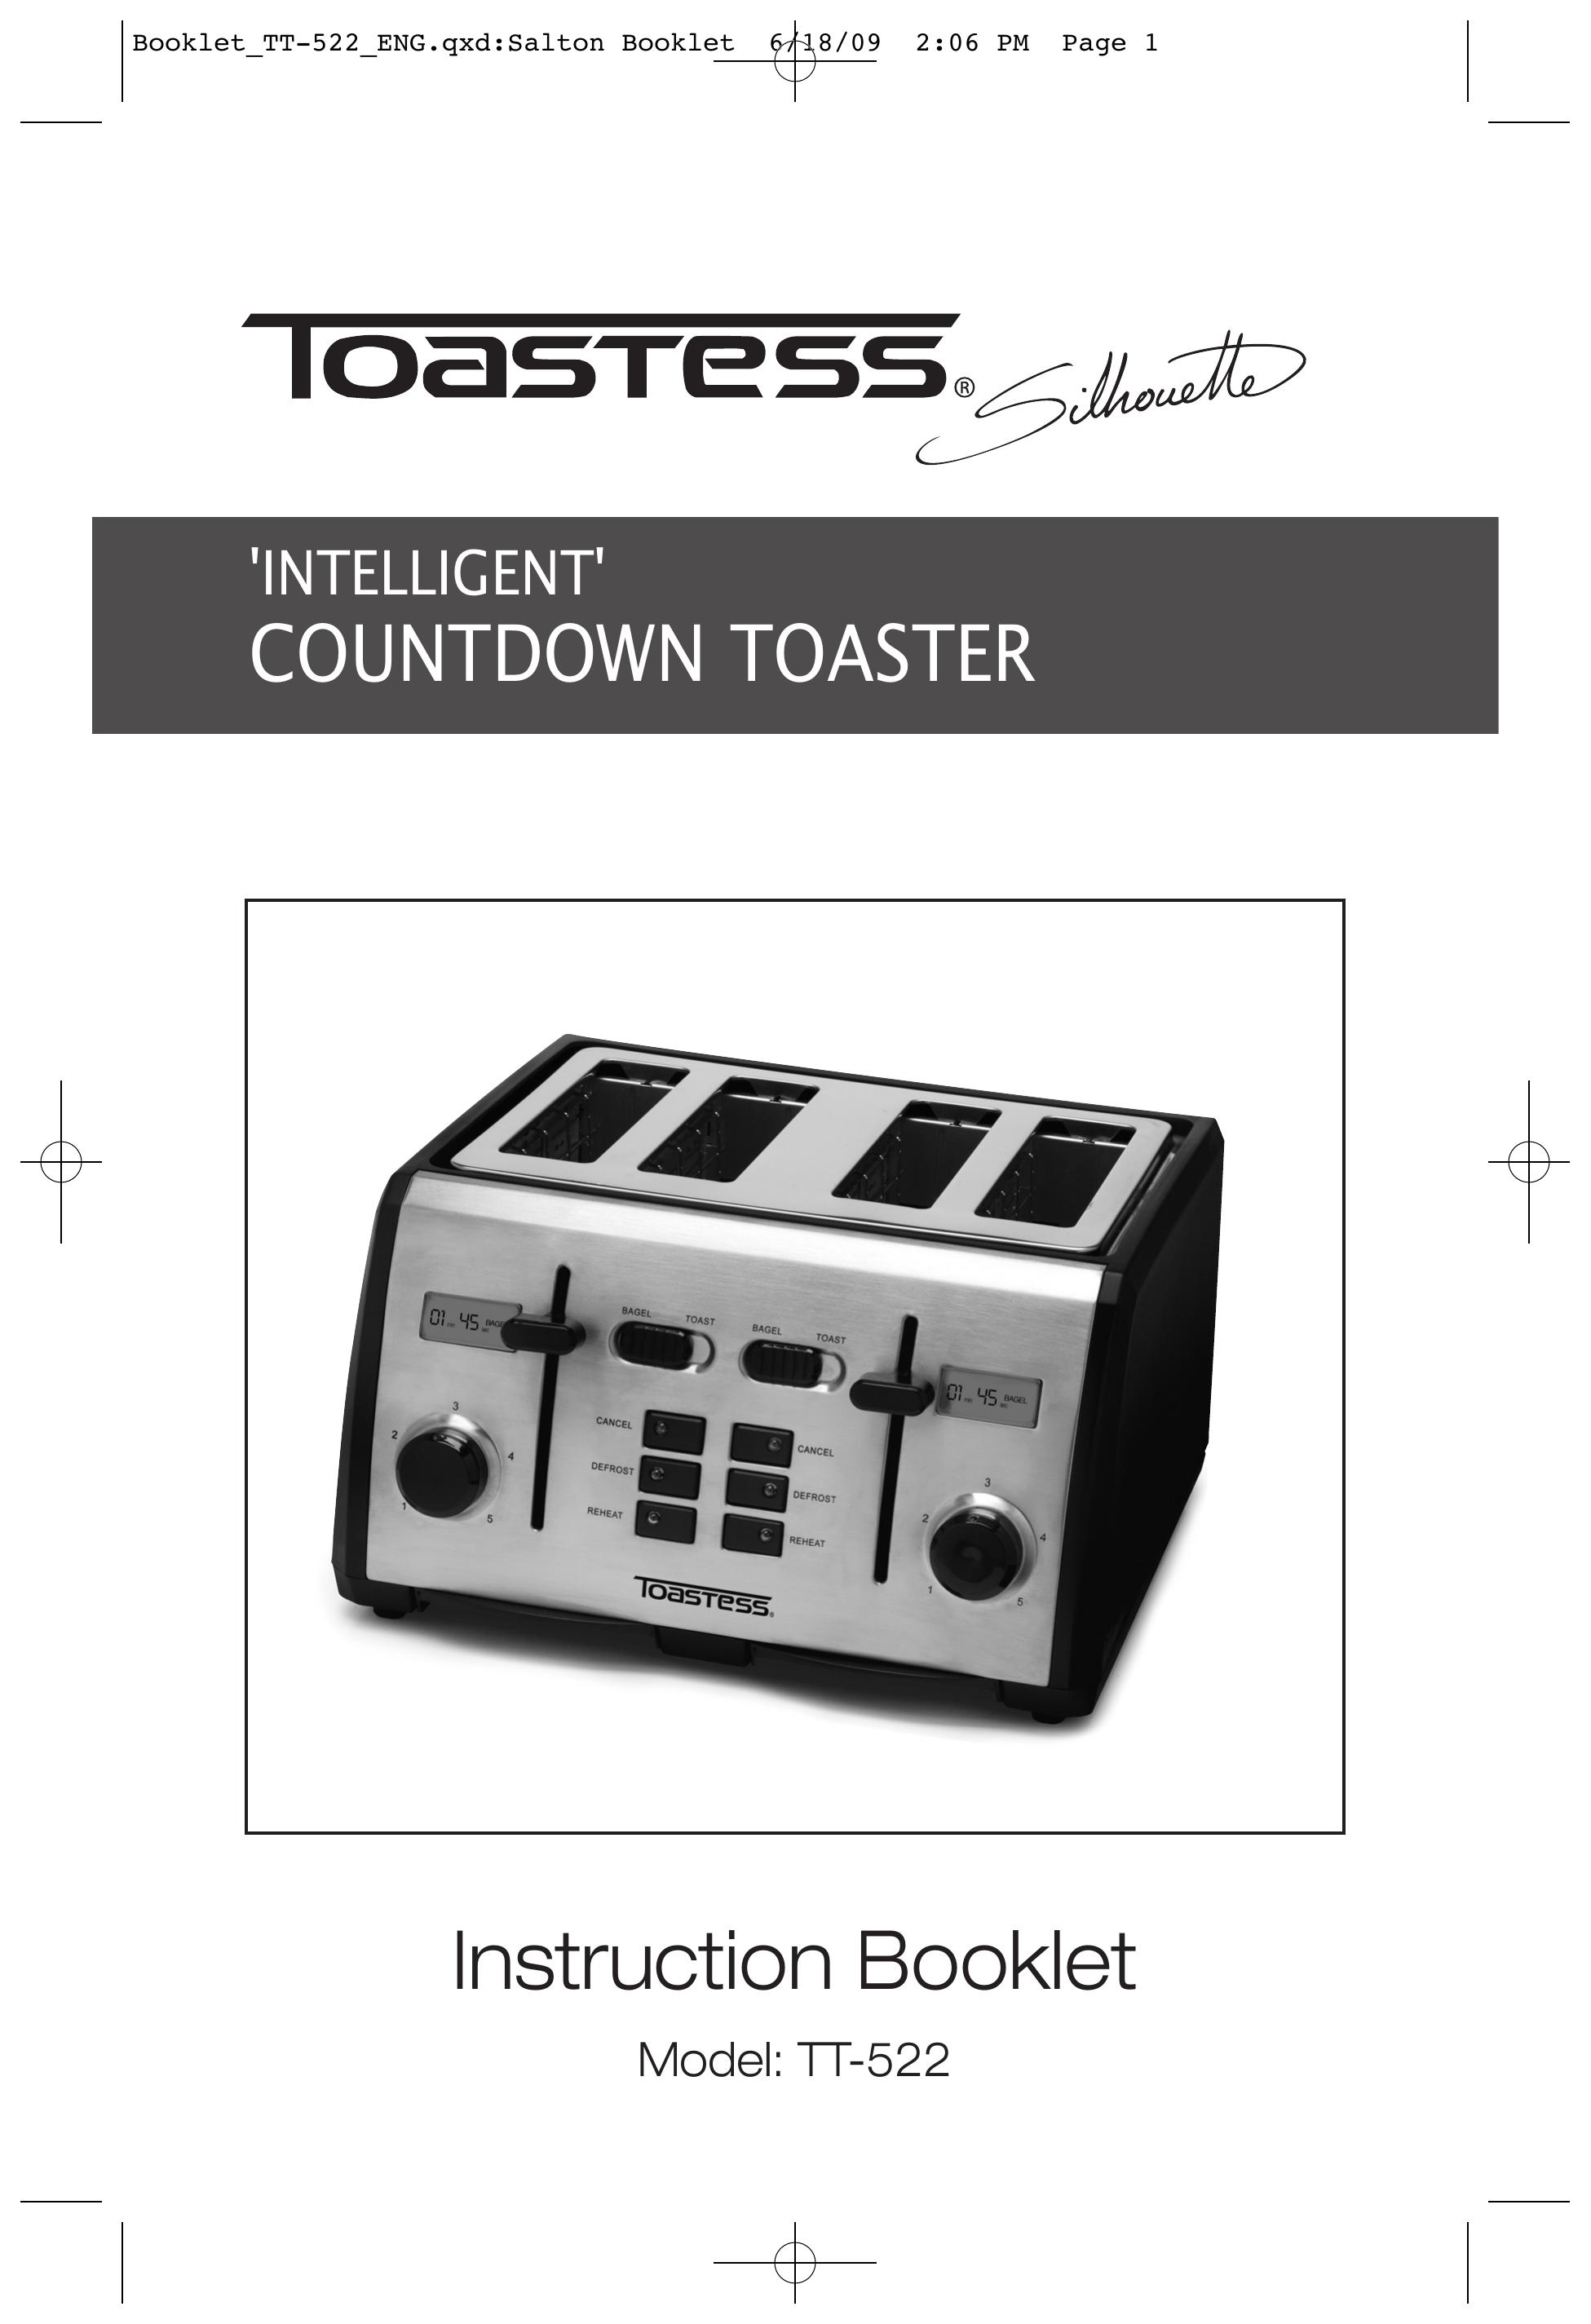 Toastess tt-522 Toaster User Manual